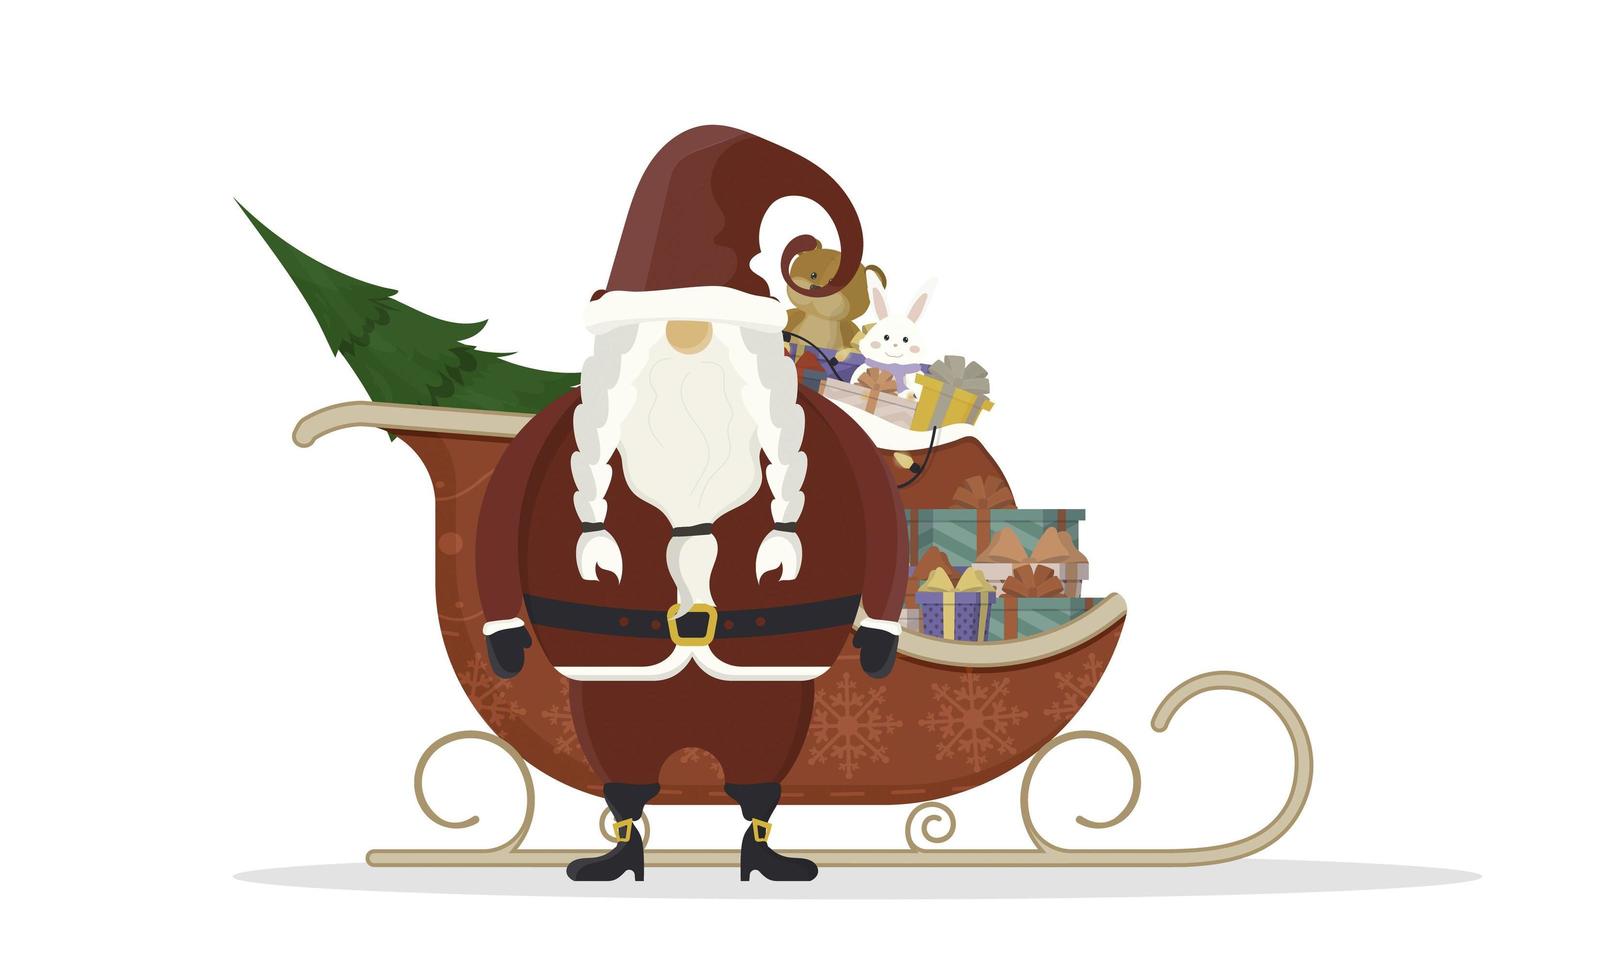 Kerstman met rode sleeën. sleeën, geschenken, nieuwjaar en kerstconcept. vectorillustratie geïsoleerd op een witte achtergrond. ontwerp in cartoonstijl. vector